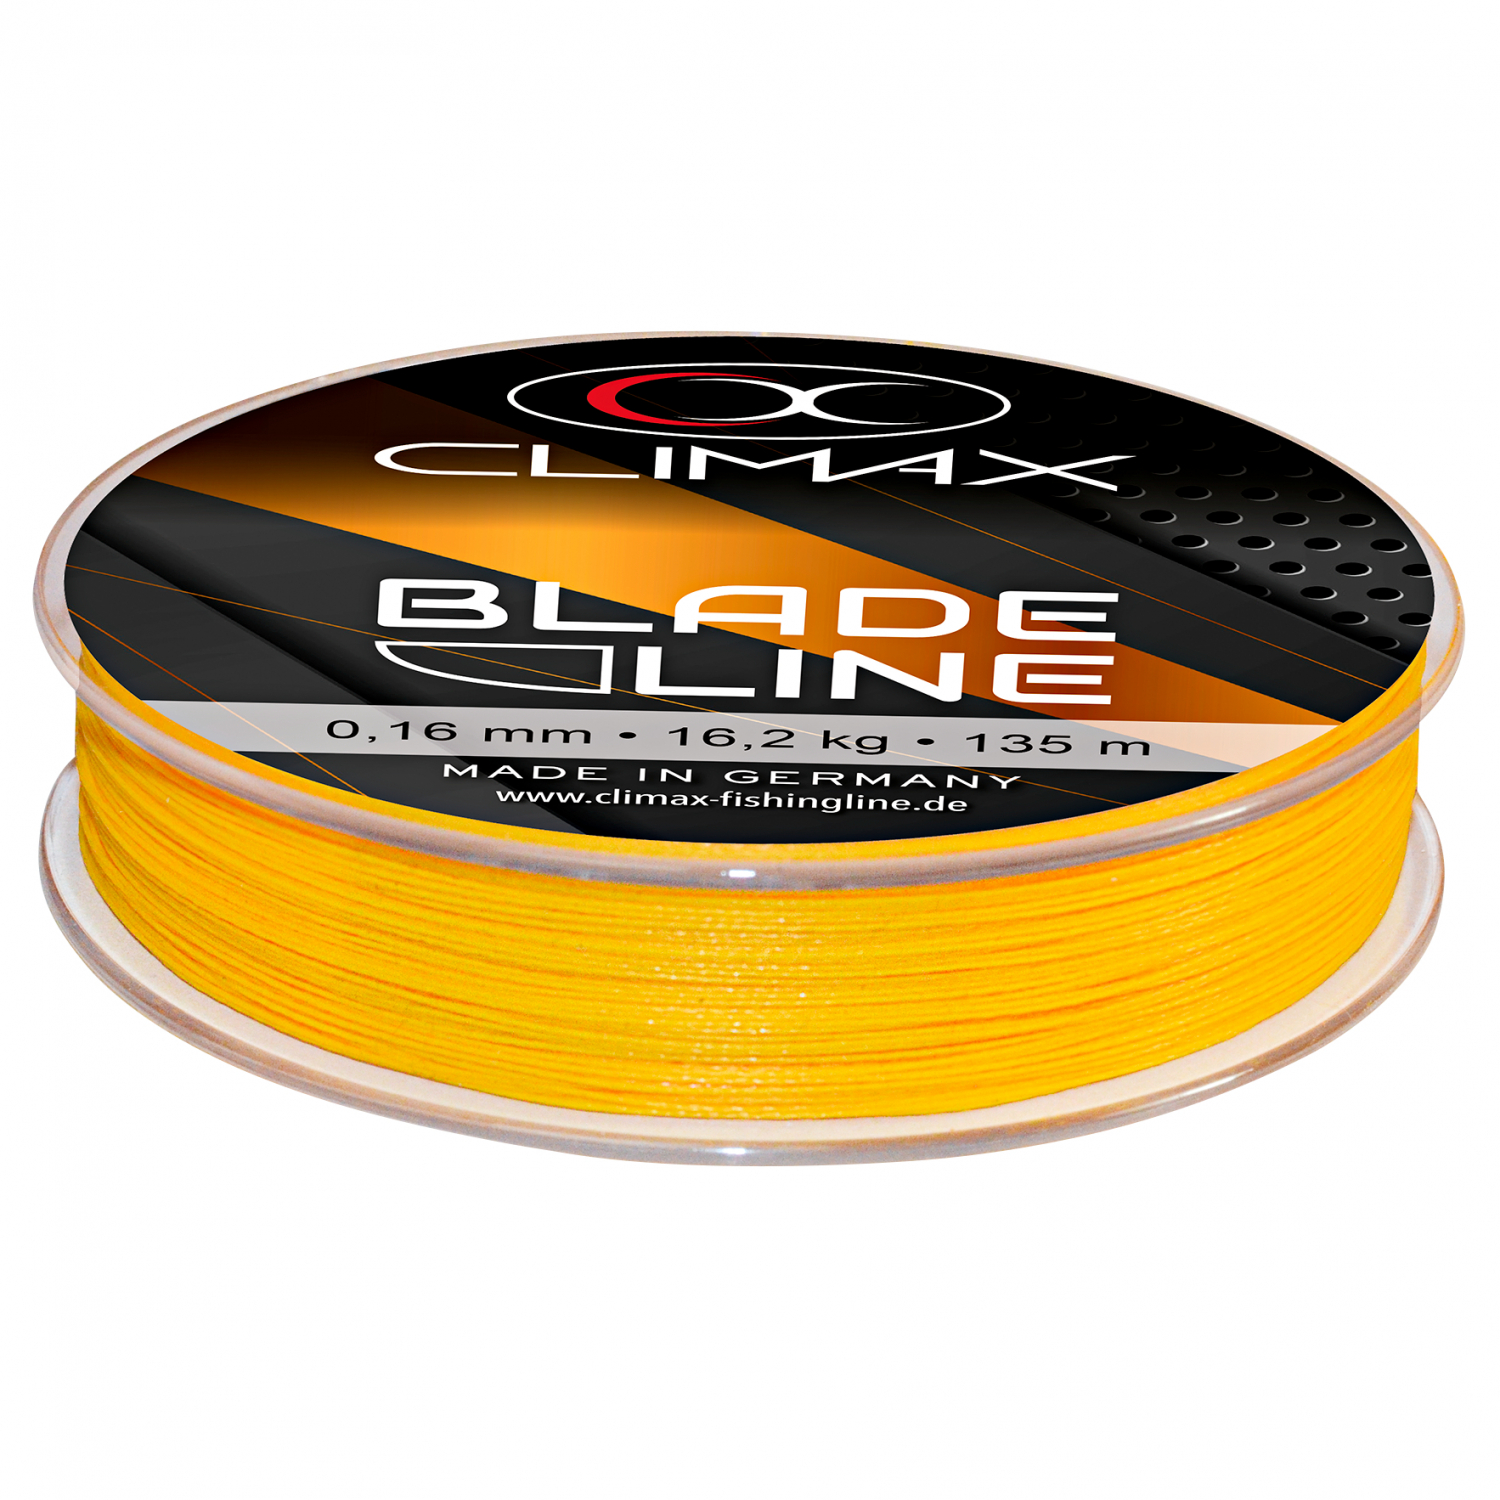 Climax Angelschnur Blade Line (gelb, 135 m) günstig kaufen